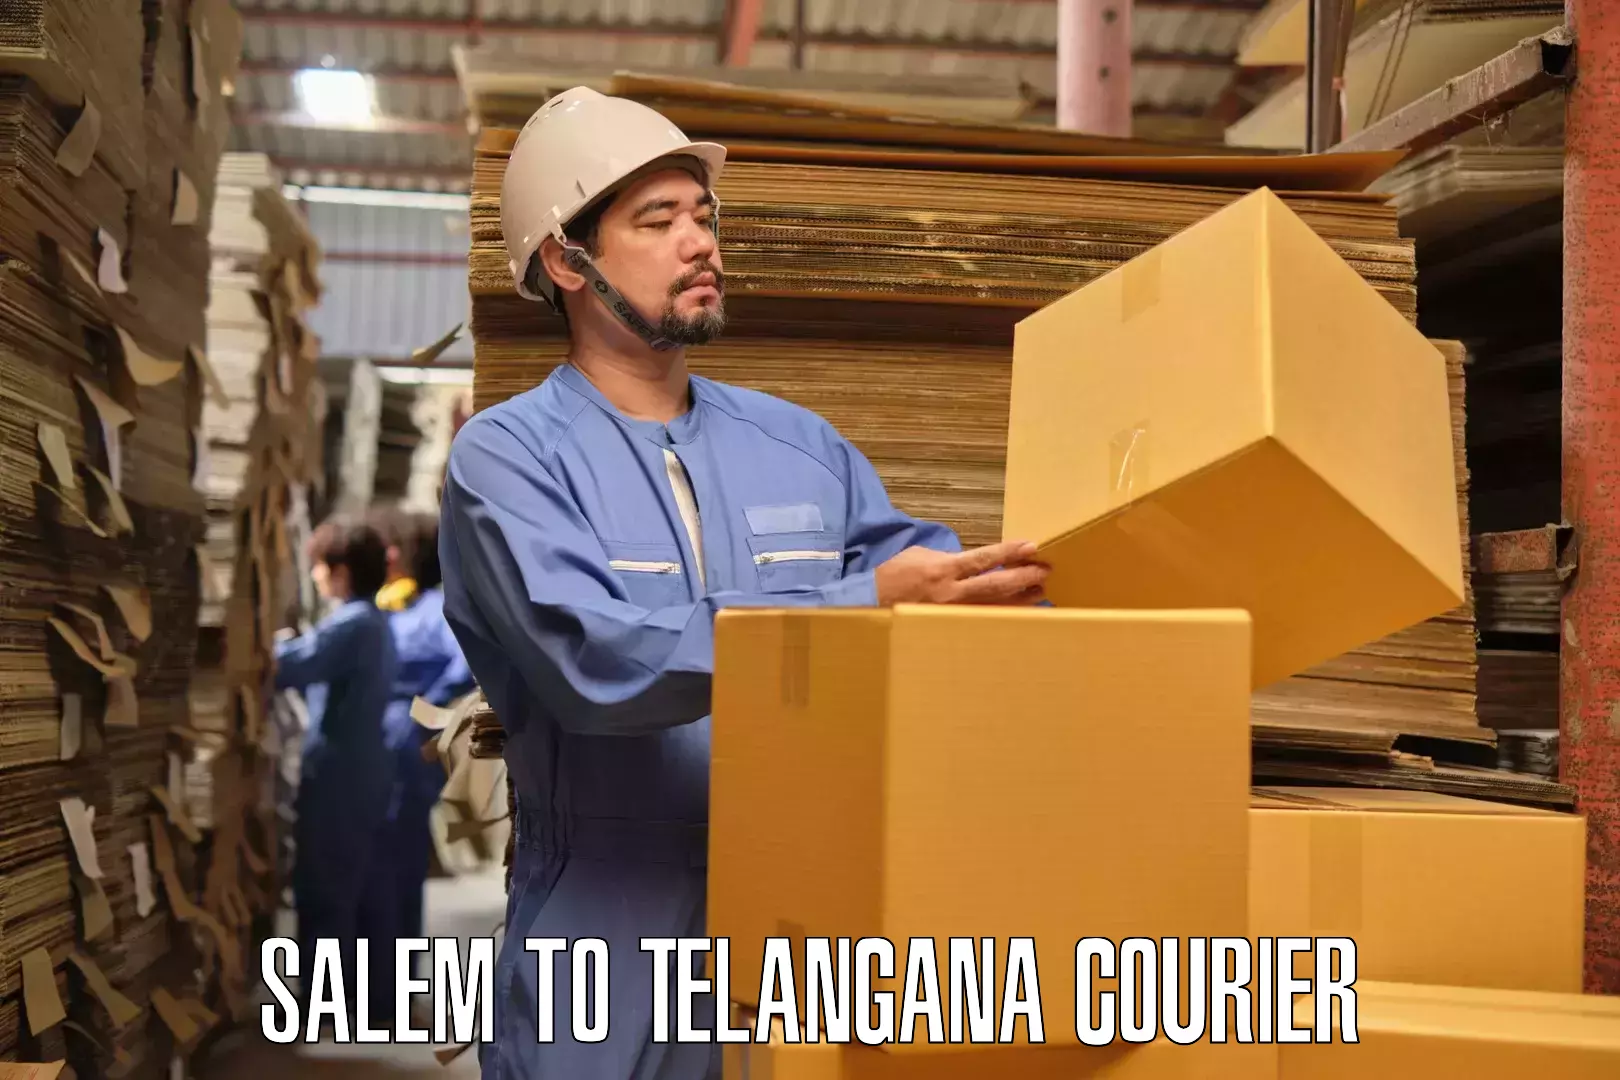 Professional furniture movers Salem to Balanagar